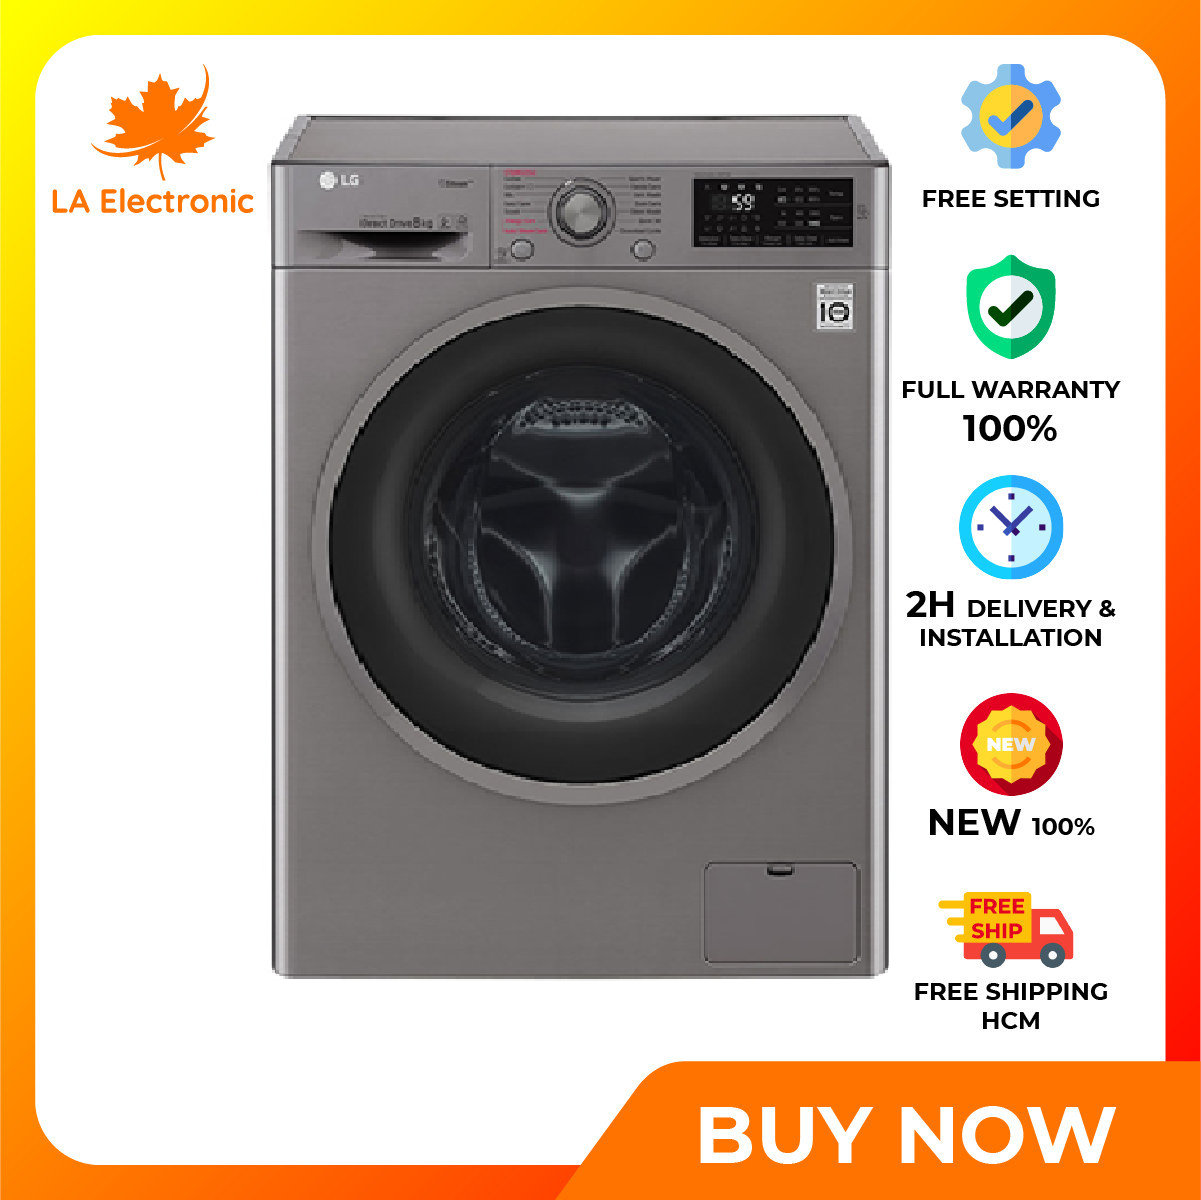 Trả Góp 0% - Máy giặt LG Inverter 8 kg FC1408S3E- Bảo hành 2 năm - Miễn phí vận chuyển HCM